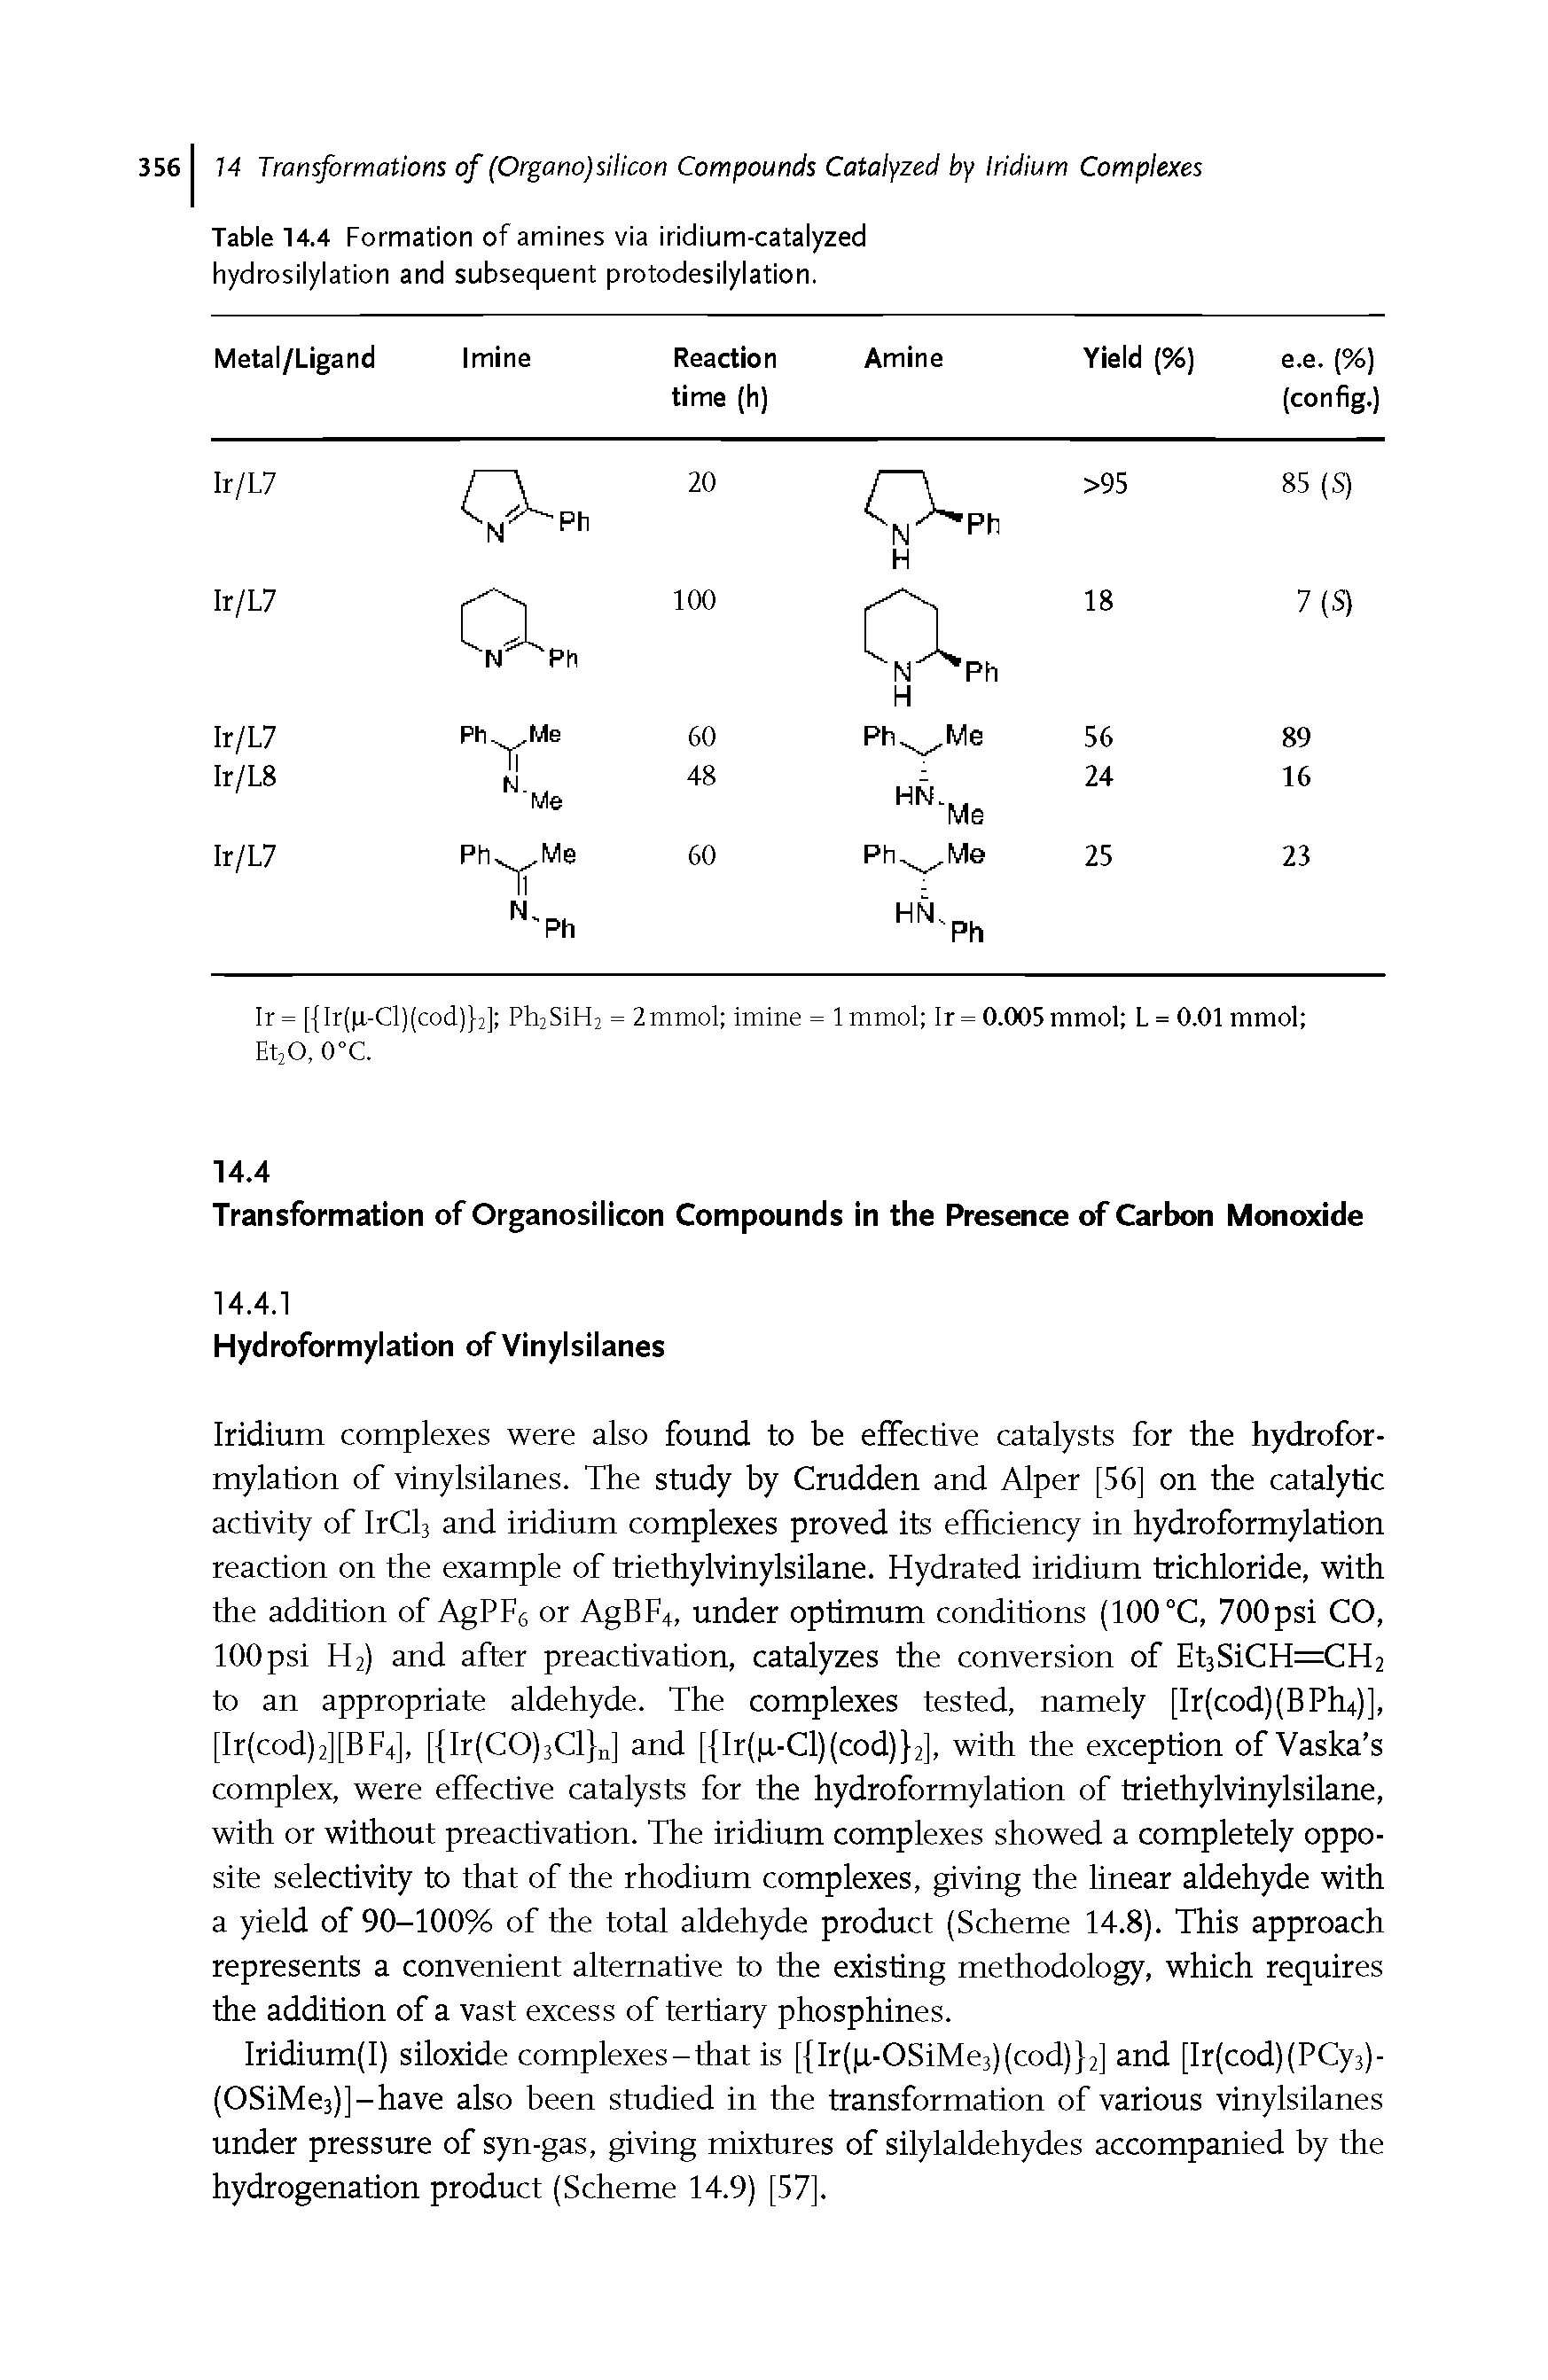 Table 14.4 Formation of amines via iridium-catalyzed hydrosilylation and subsequent protodesilylation.